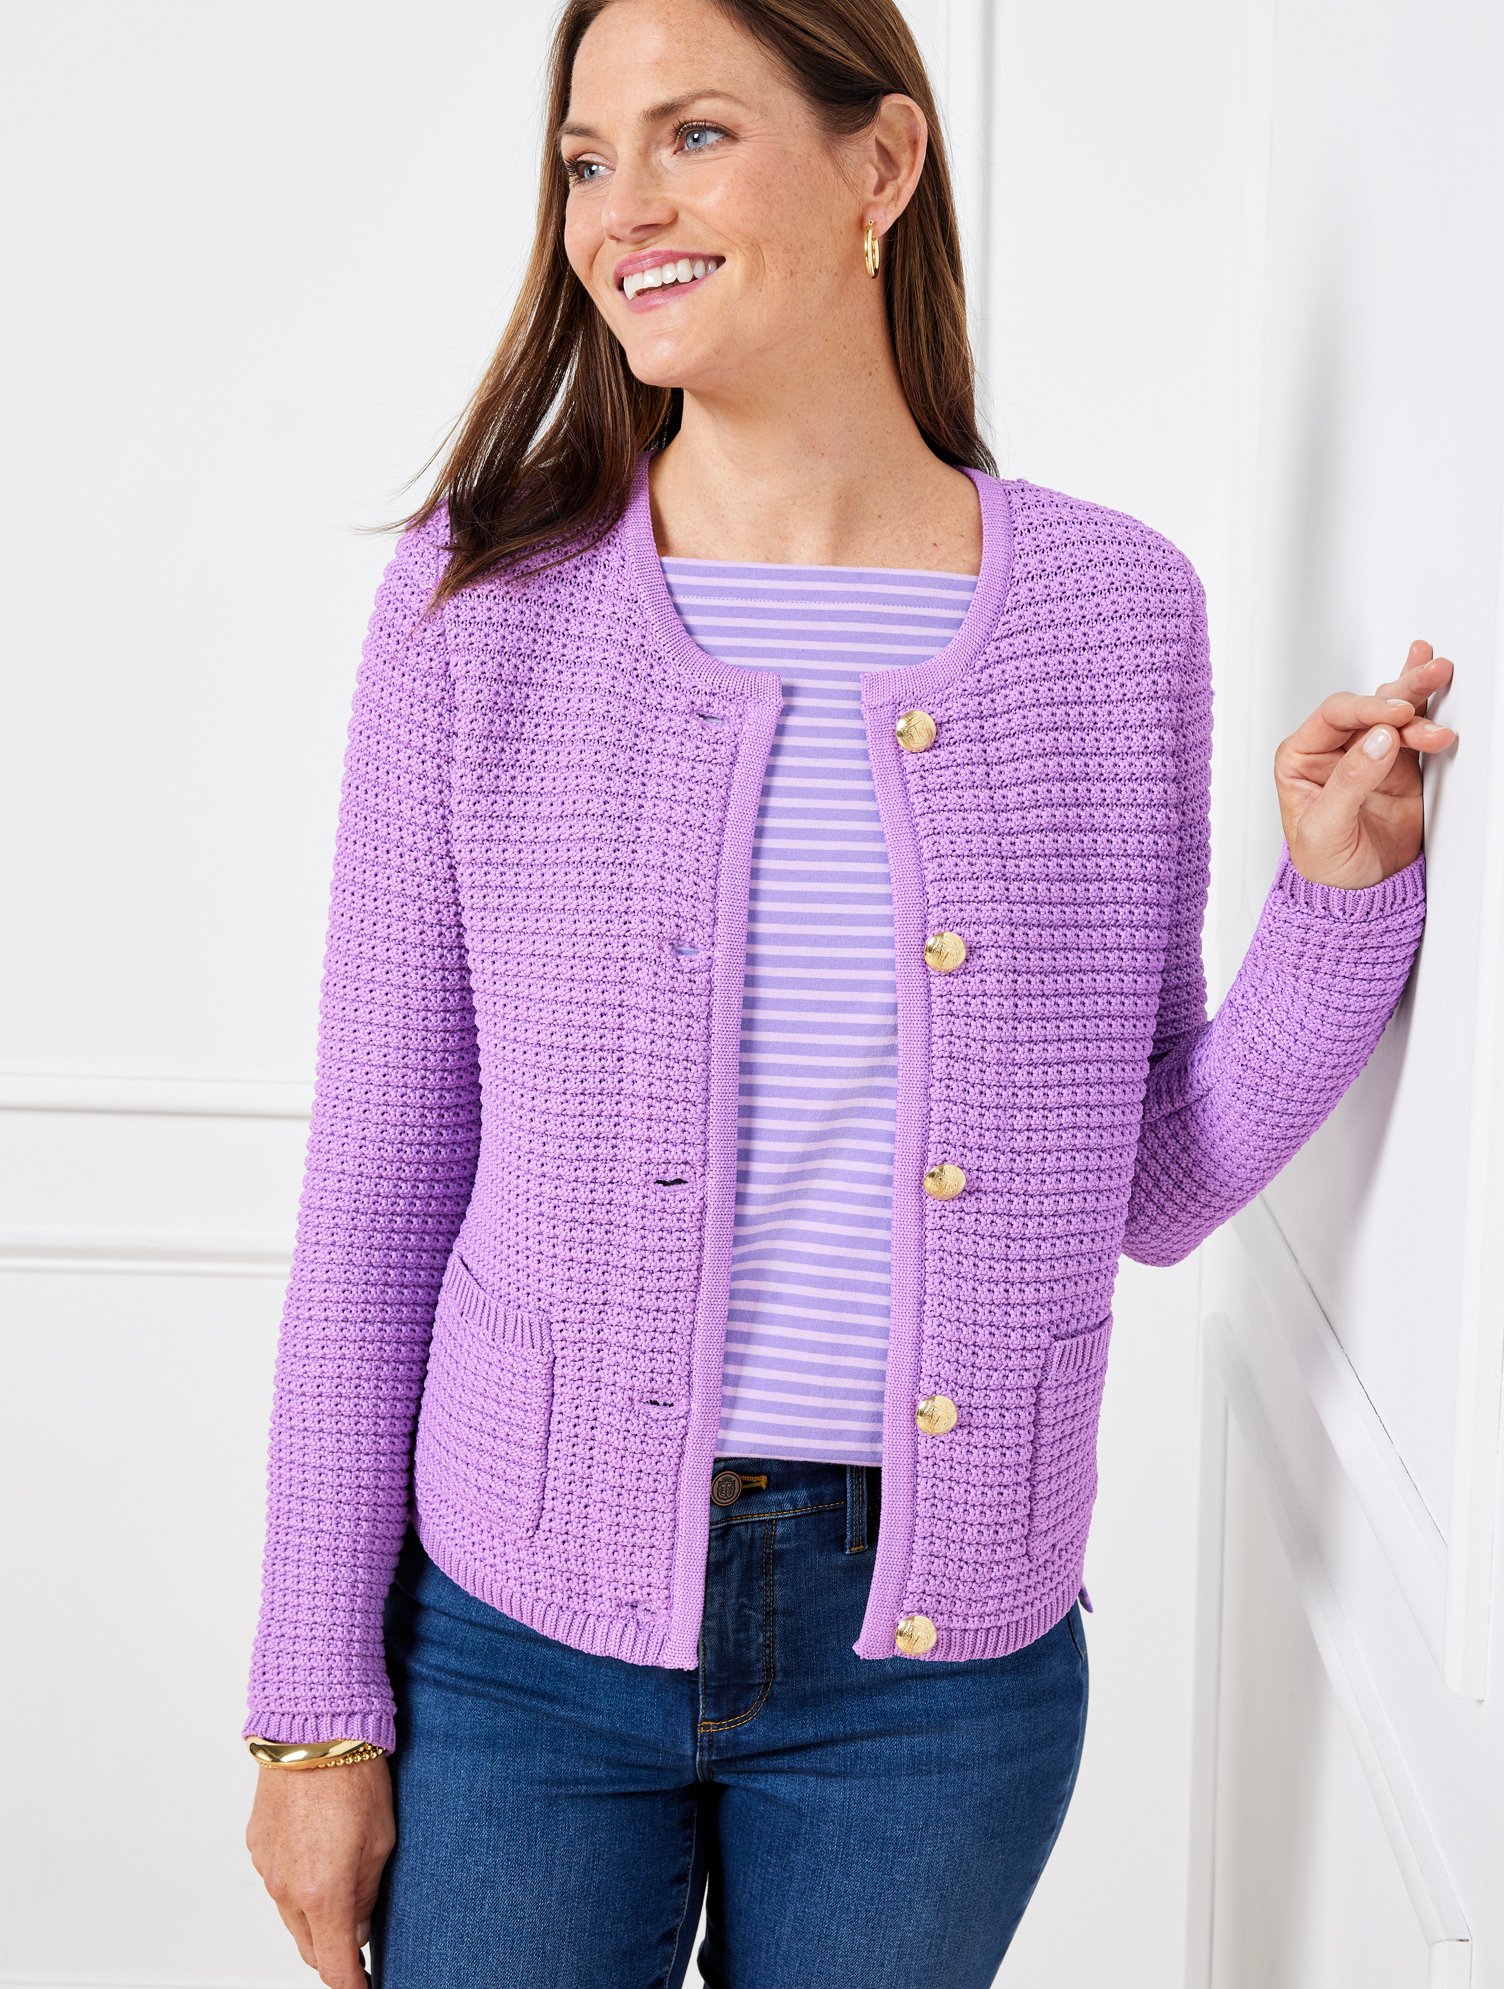 Talbots Kate Cardigan Sweater - Wisteria Purple - 3x